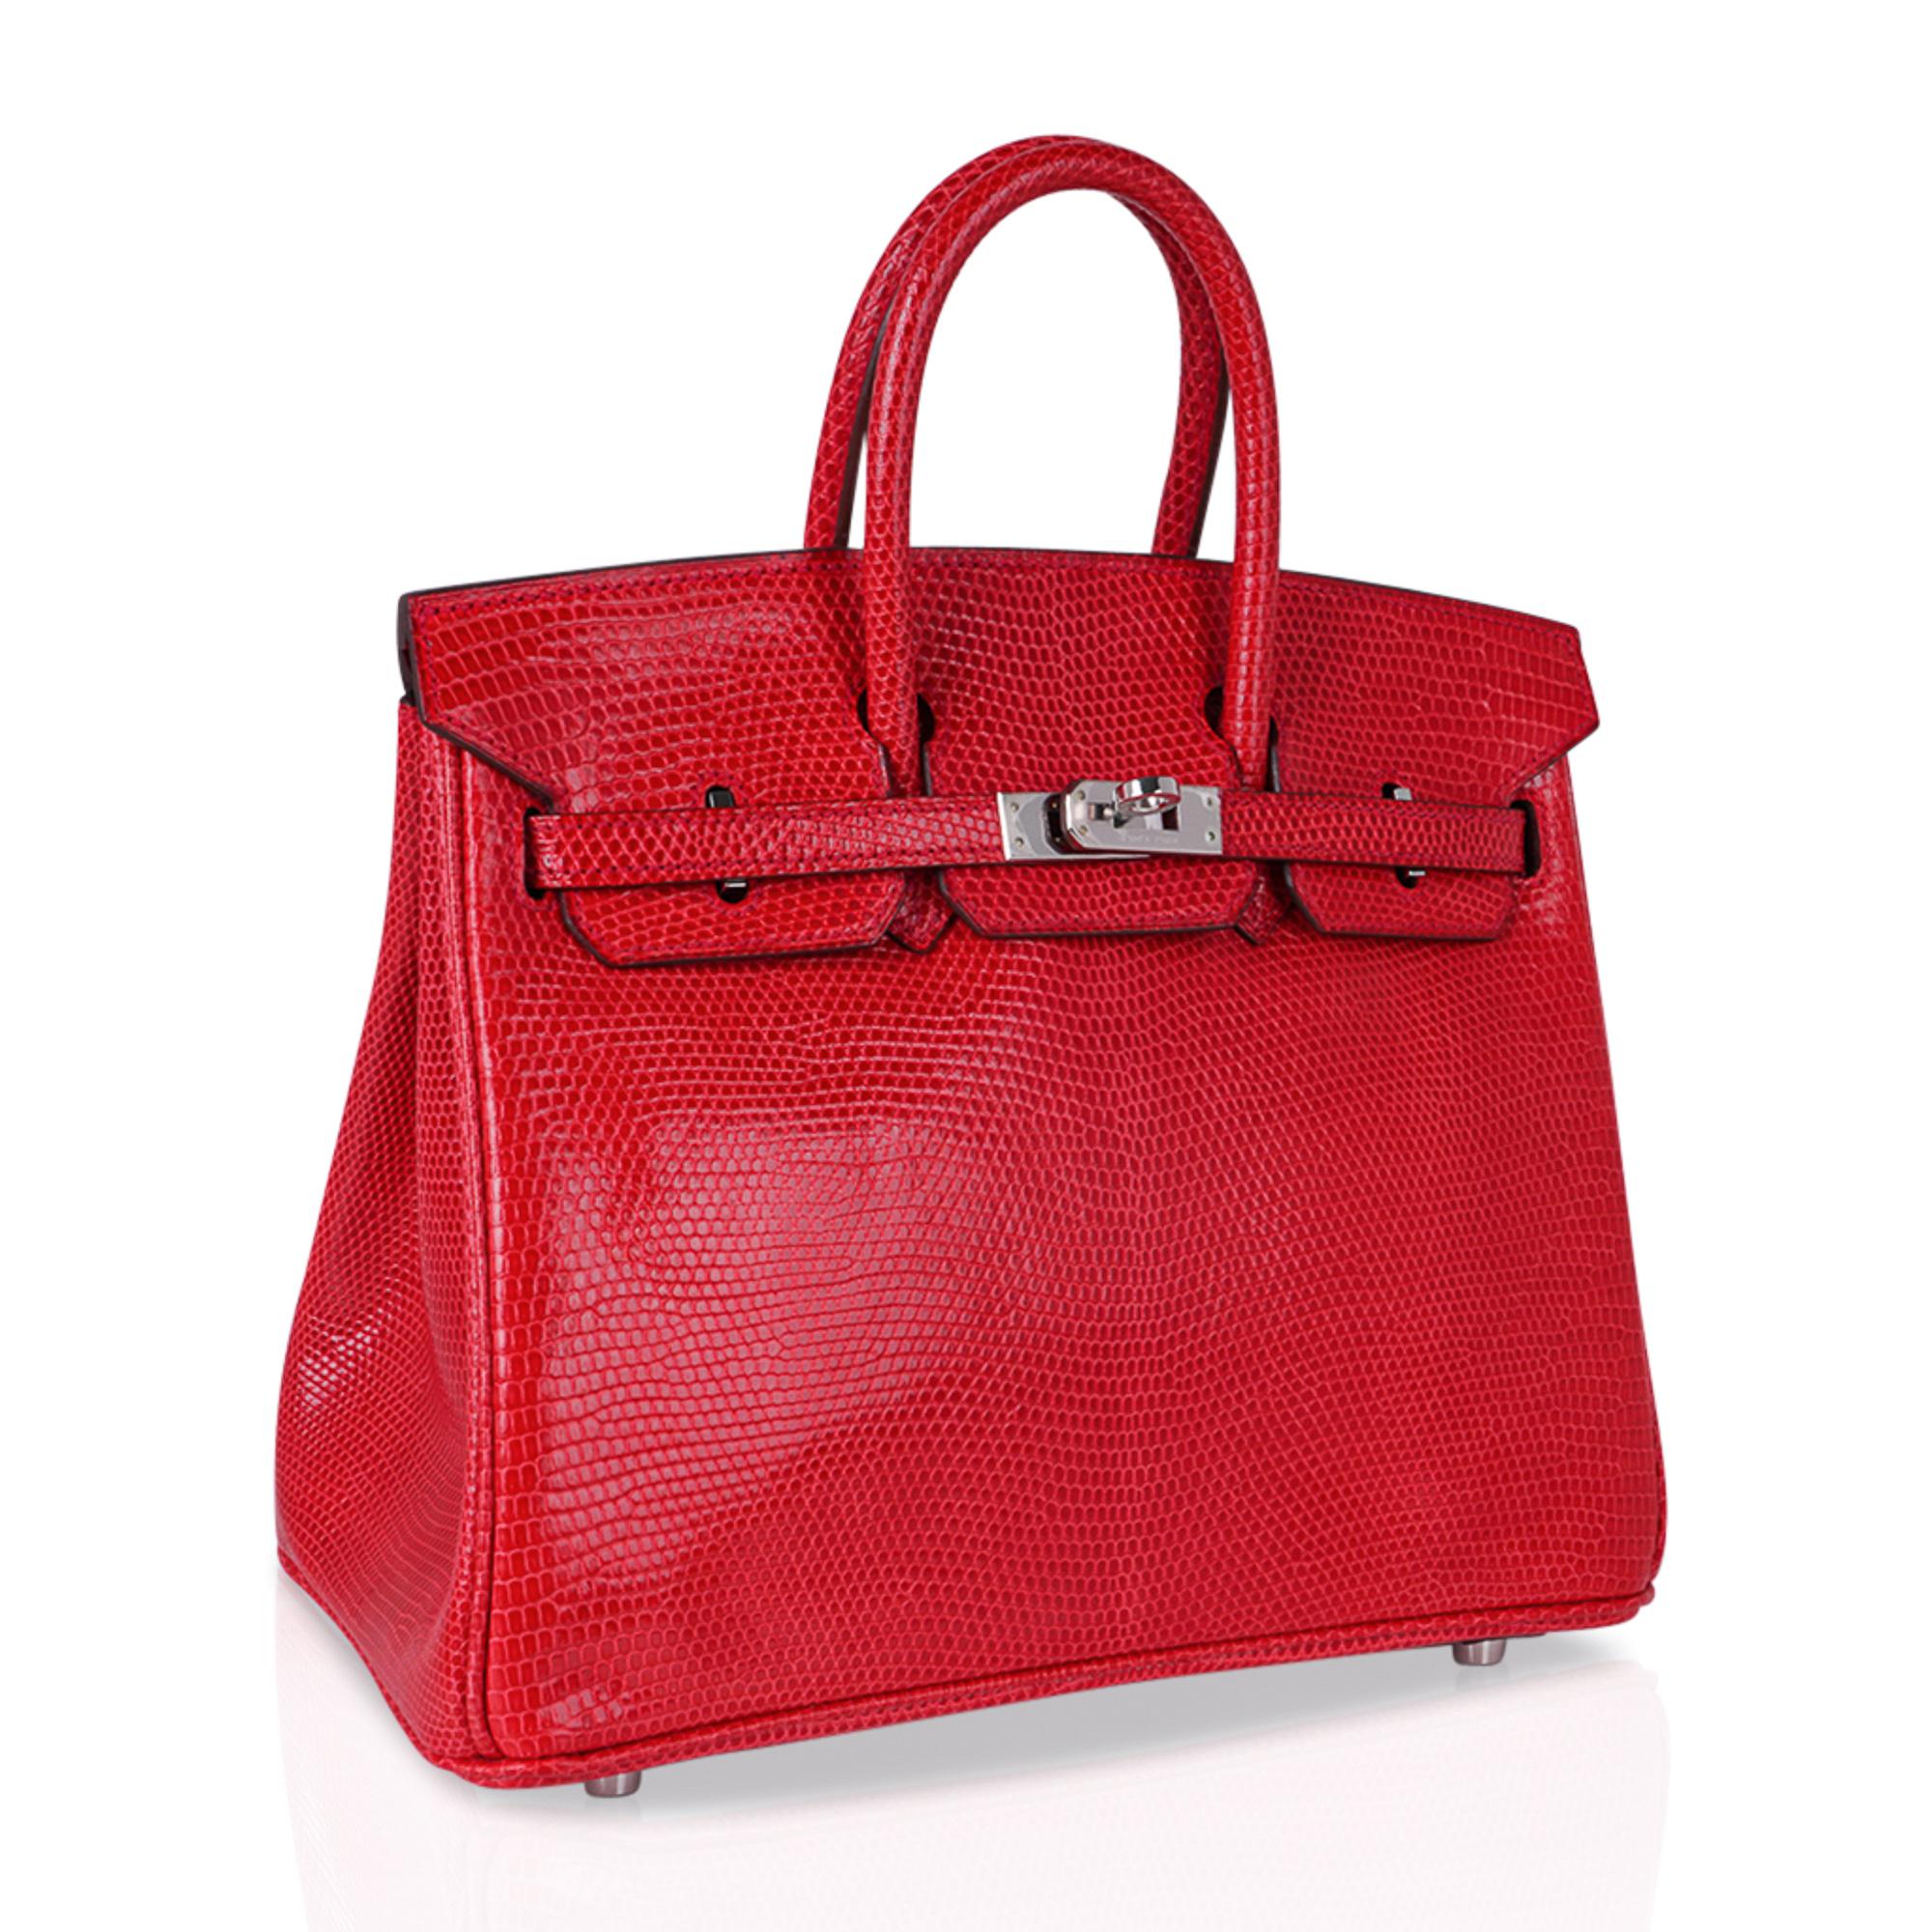 Mightychic propose un sac Hermes Birkin 25 Rouge Exotic en lézard rare et convoité.
Un magnifique rouge fraise, neutre et parfait pour être porté toute l'année.
Une magnifique touche de couleur à ajouter à une myriade d'ensembles de votre